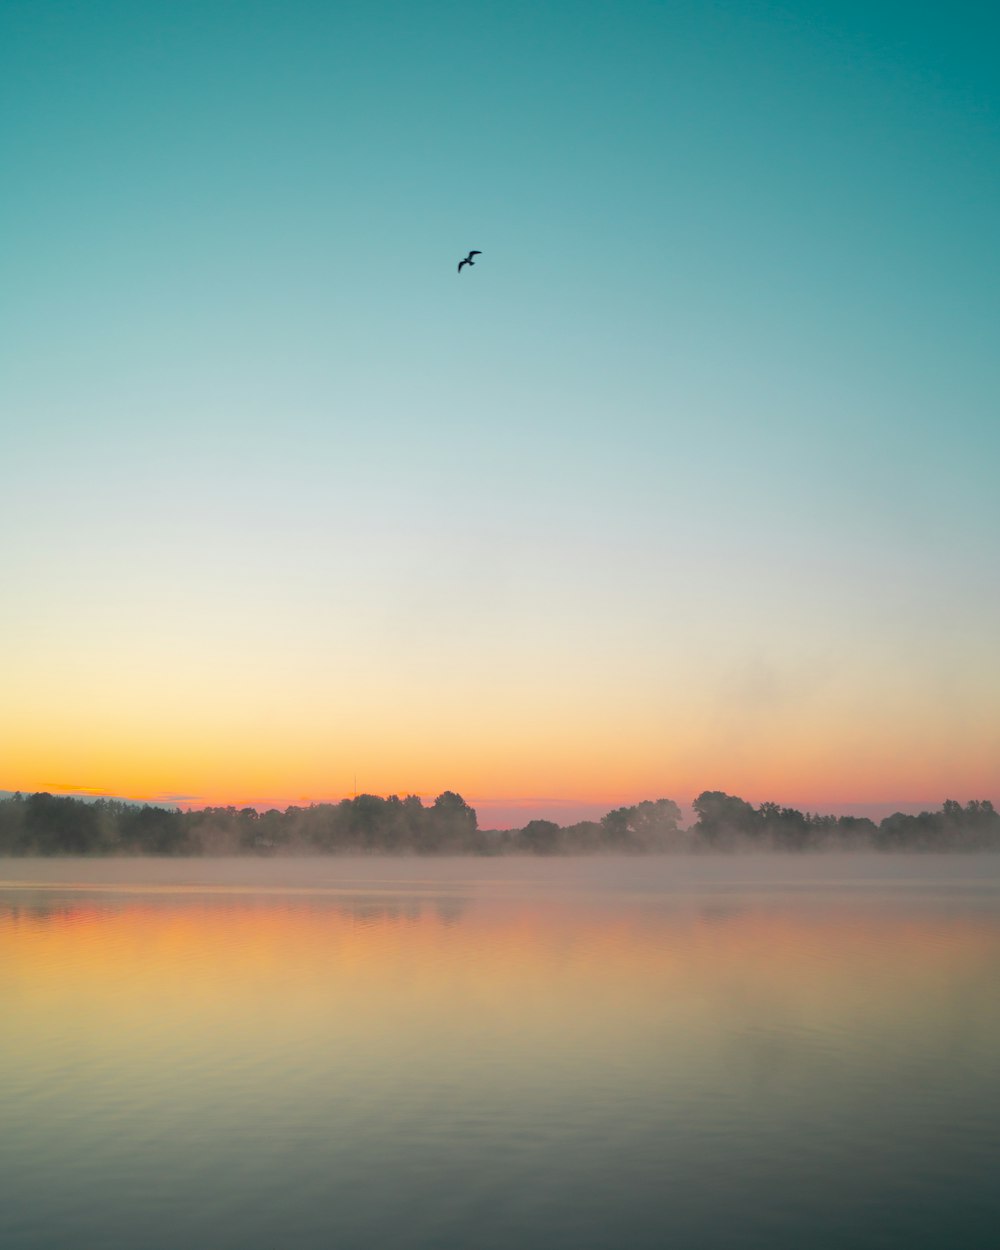 pájaro volando sobre el lago durante la puesta del sol